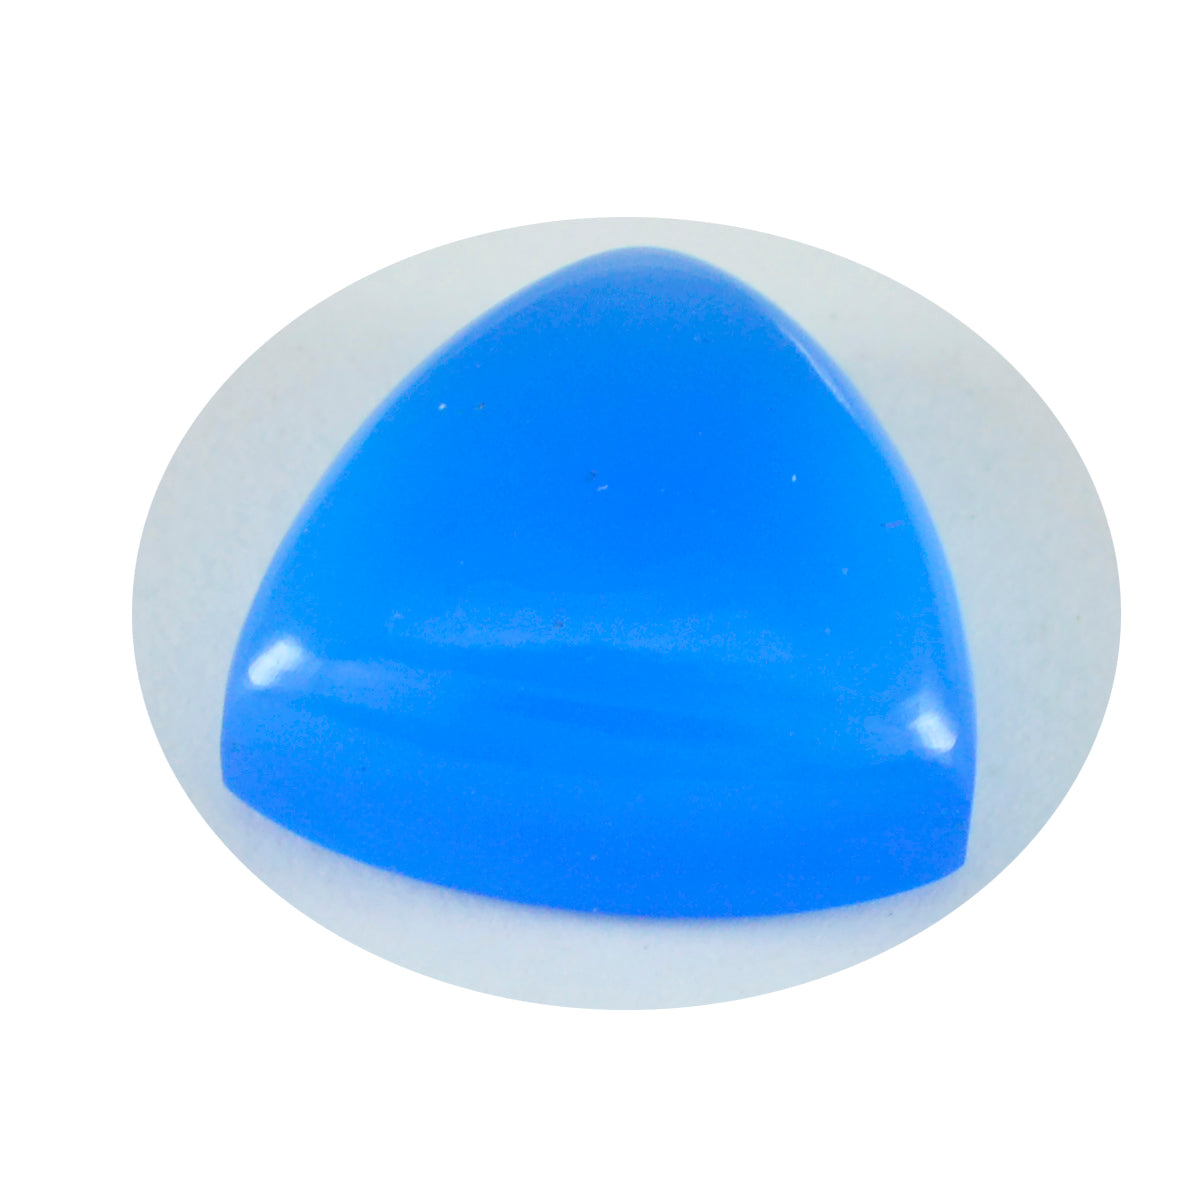 Riyogems 1 cabujón de calcedonia azul, 14x14 mm, forma de trillón, gema suelta de calidad A+1